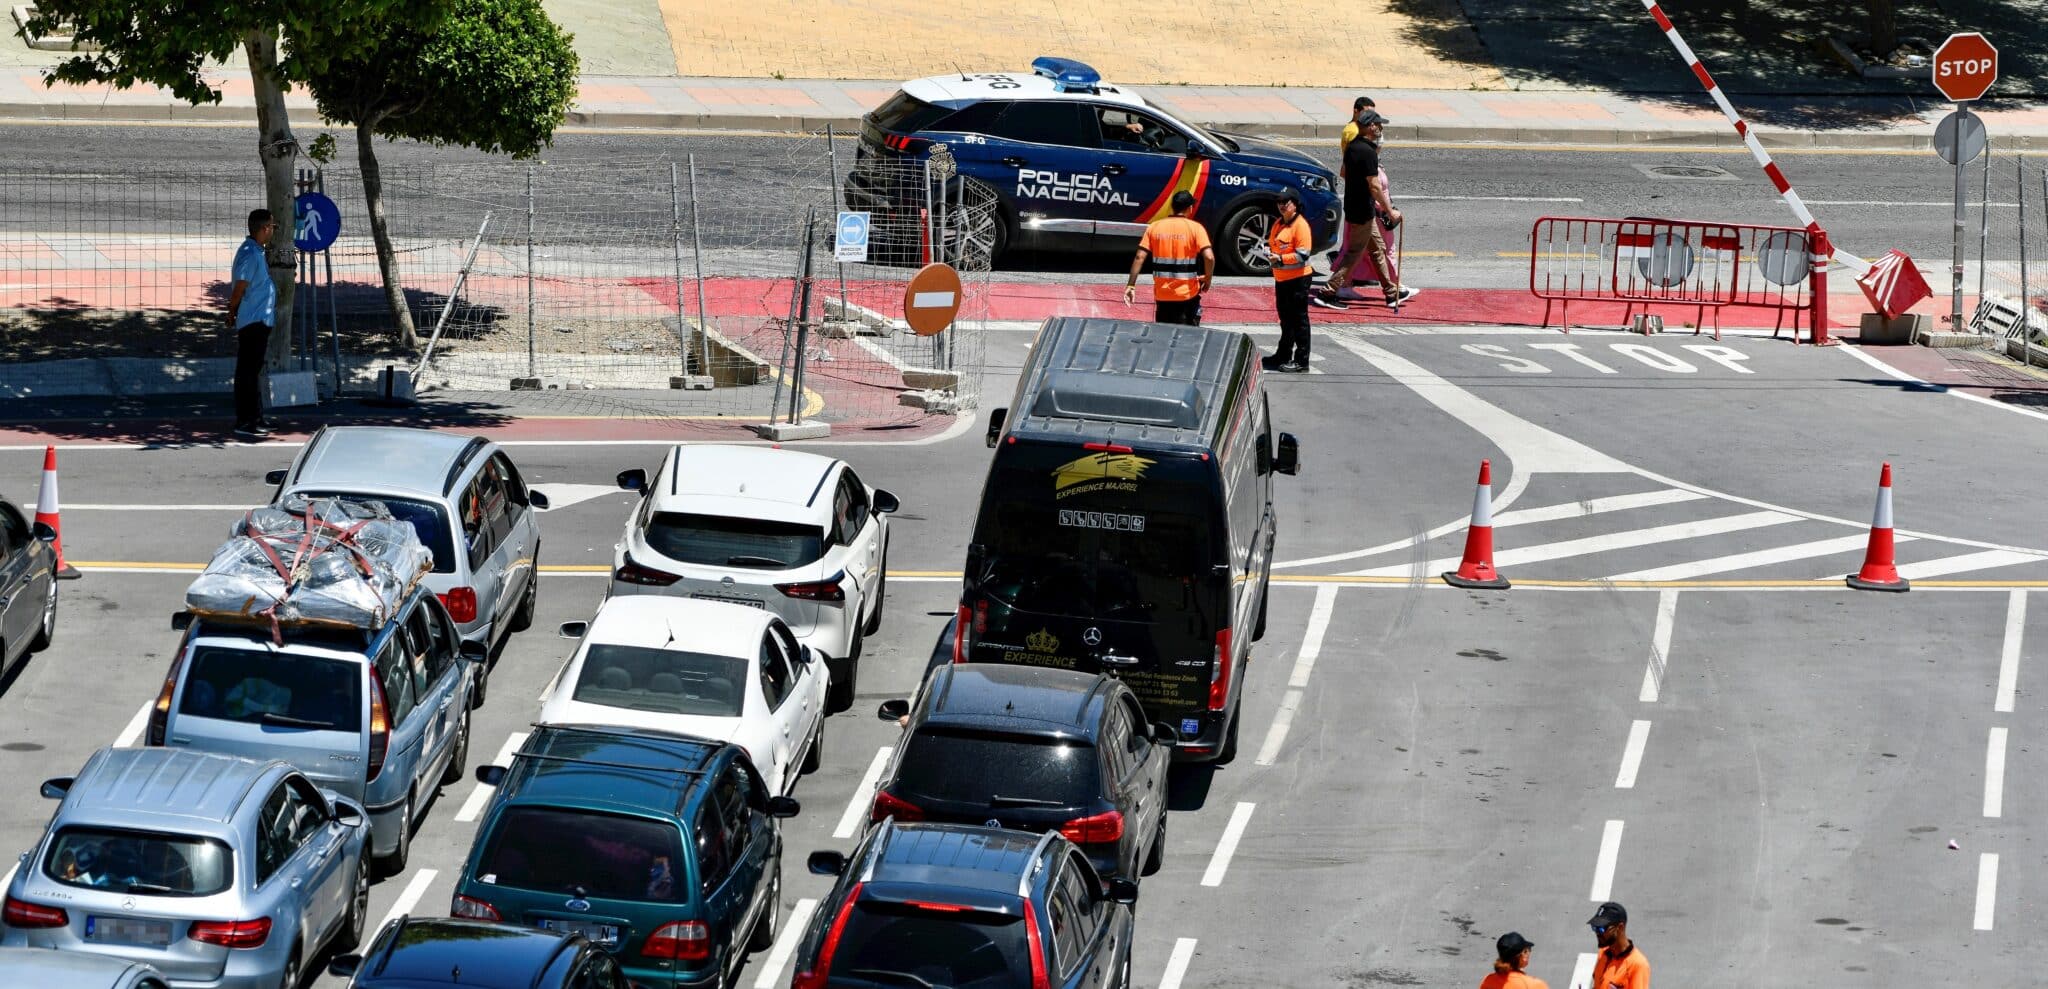 Colas de coches en Ceuta para pasar por la frontera de Ceuta a Marruecos a finales de junio.